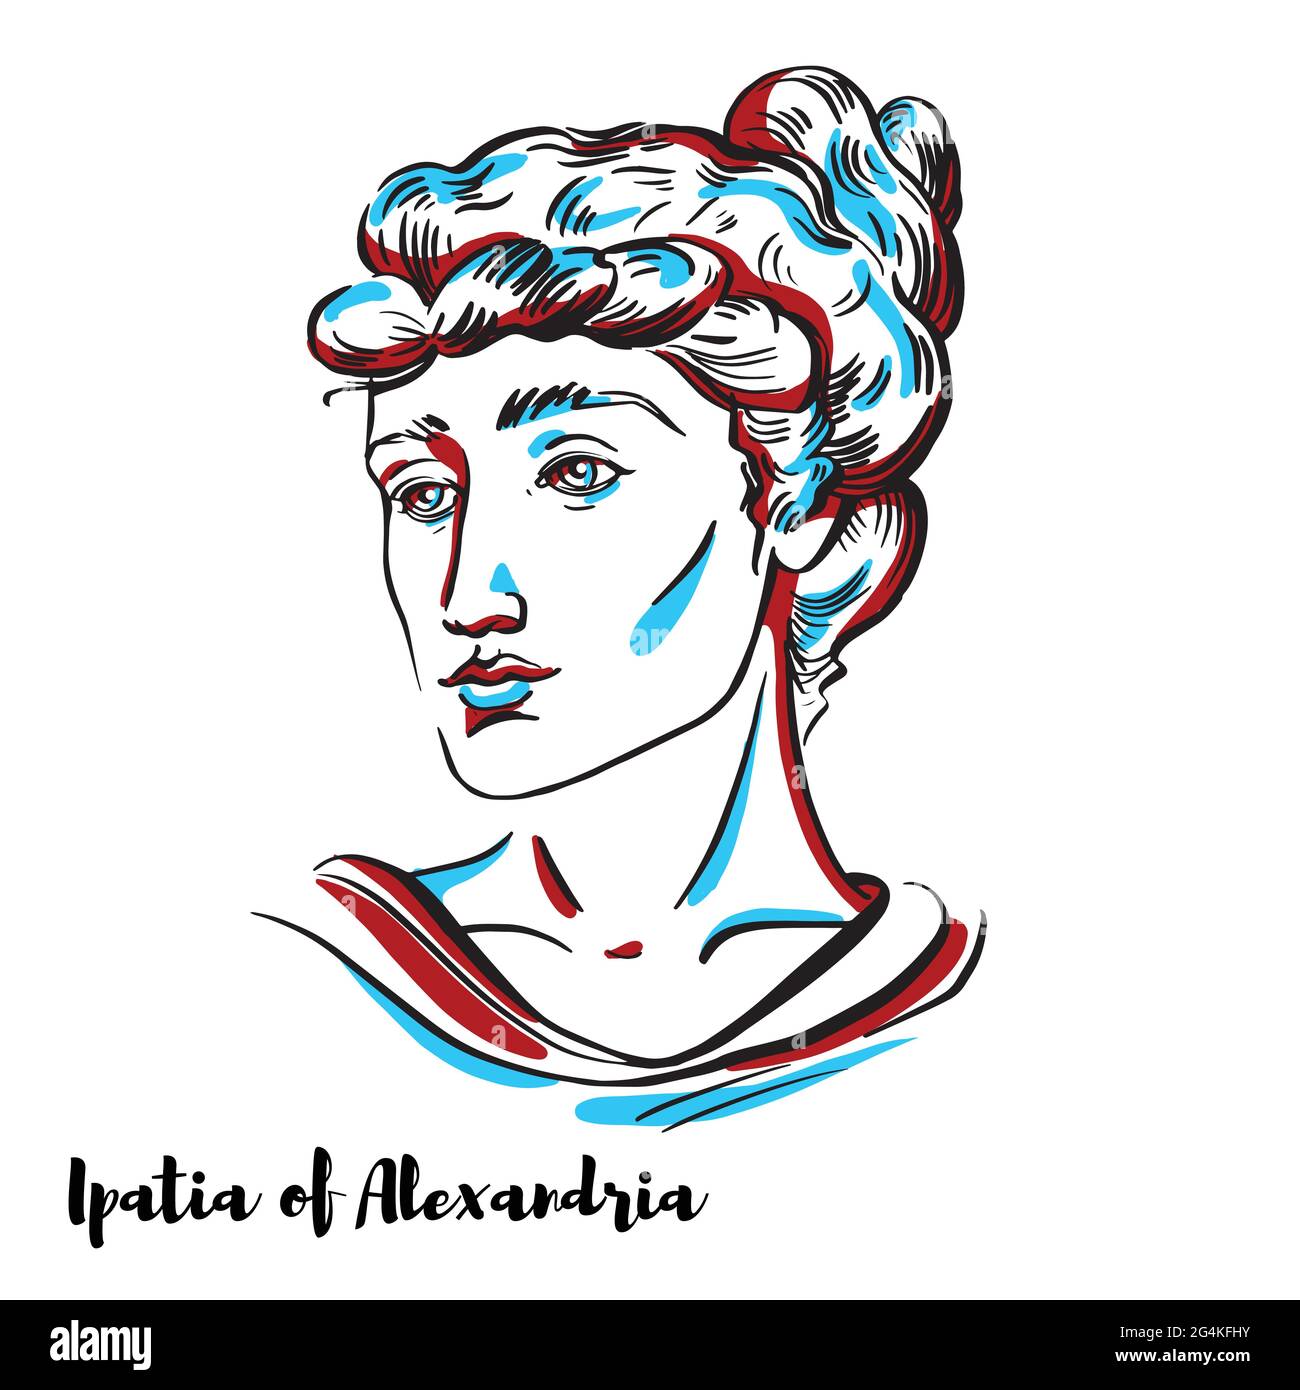 Ipatia von Alexandria graviert Vektor-Porträt mit Tinte Konturen auf weißem Hintergrund. Hellenistischer neuplatonistischer Philosoph, Astronom und Mathematiker Stock Vektor